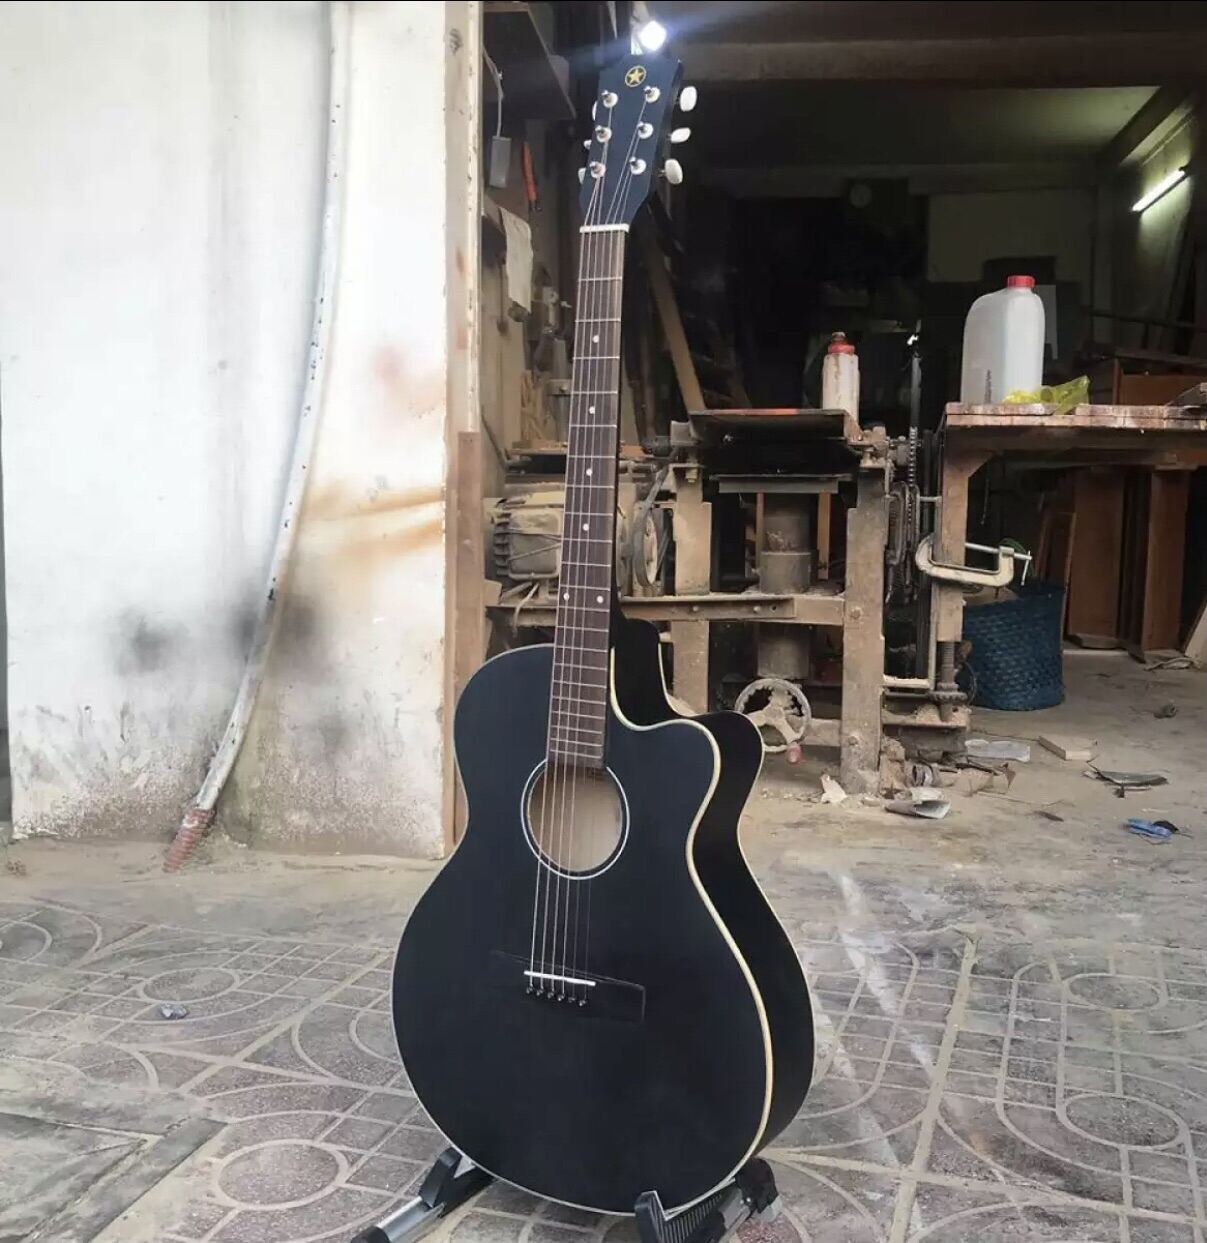 đang guitar acoustic cao cấp nhập khẩu Thái lan có ty chỉnh chống rung( tặng kèm phím gảy).